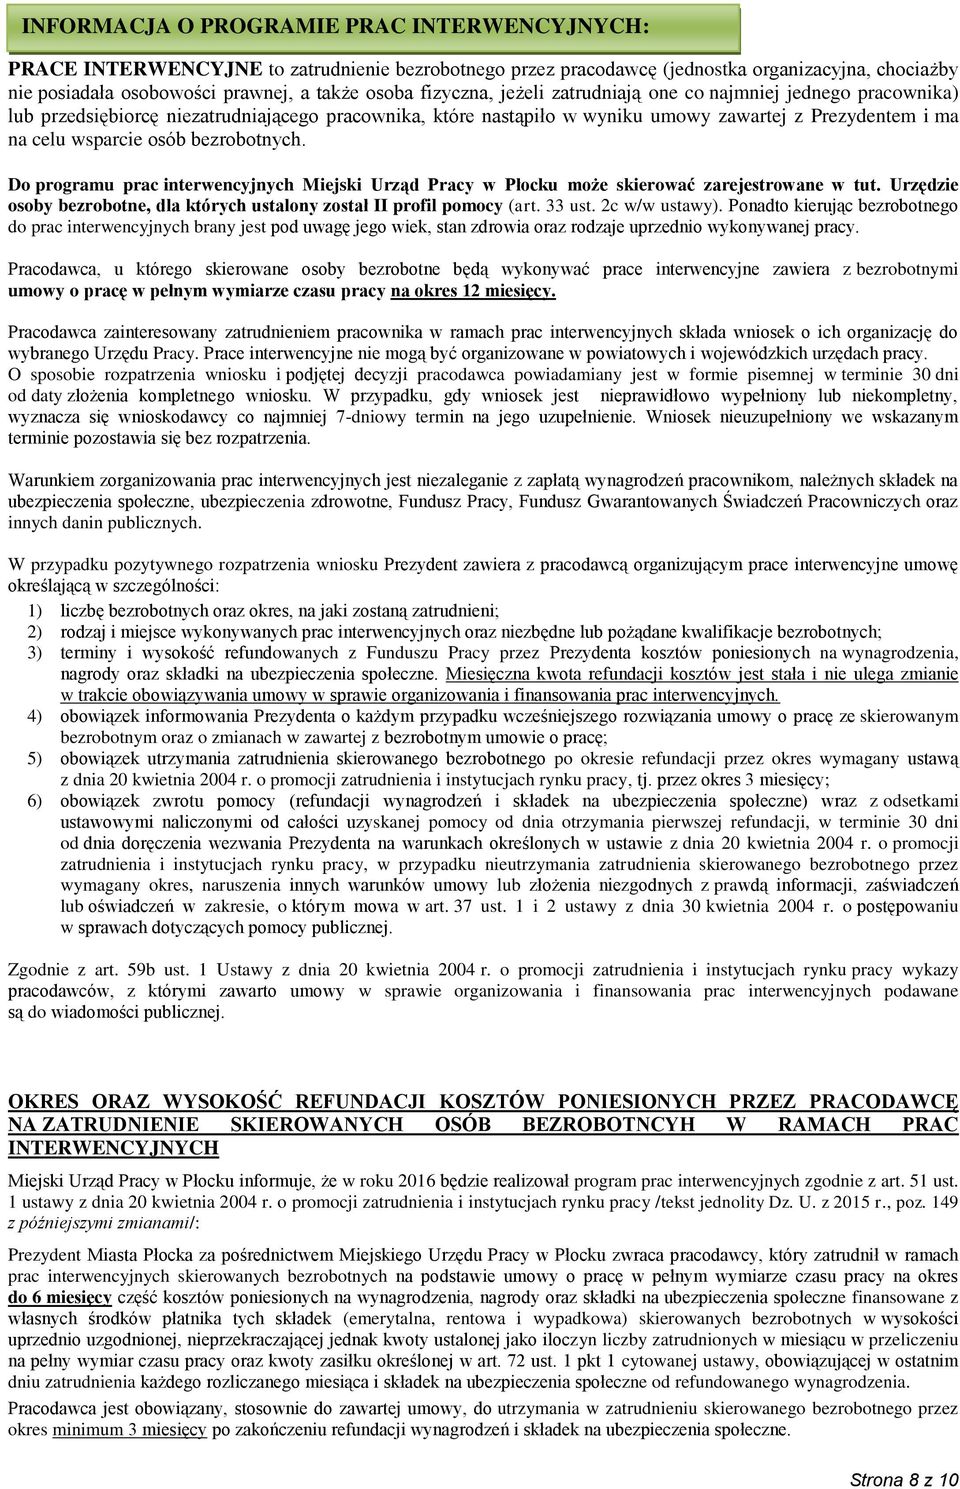 bezrobotnych. Do programu prac interwencyjnych Miejski Urząd Pracy w Płocku może skierować zarejestrowane w tut. Urzędzie osoby bezrobotne, dla których ustalony został II profil pomocy (art. 33 ust.